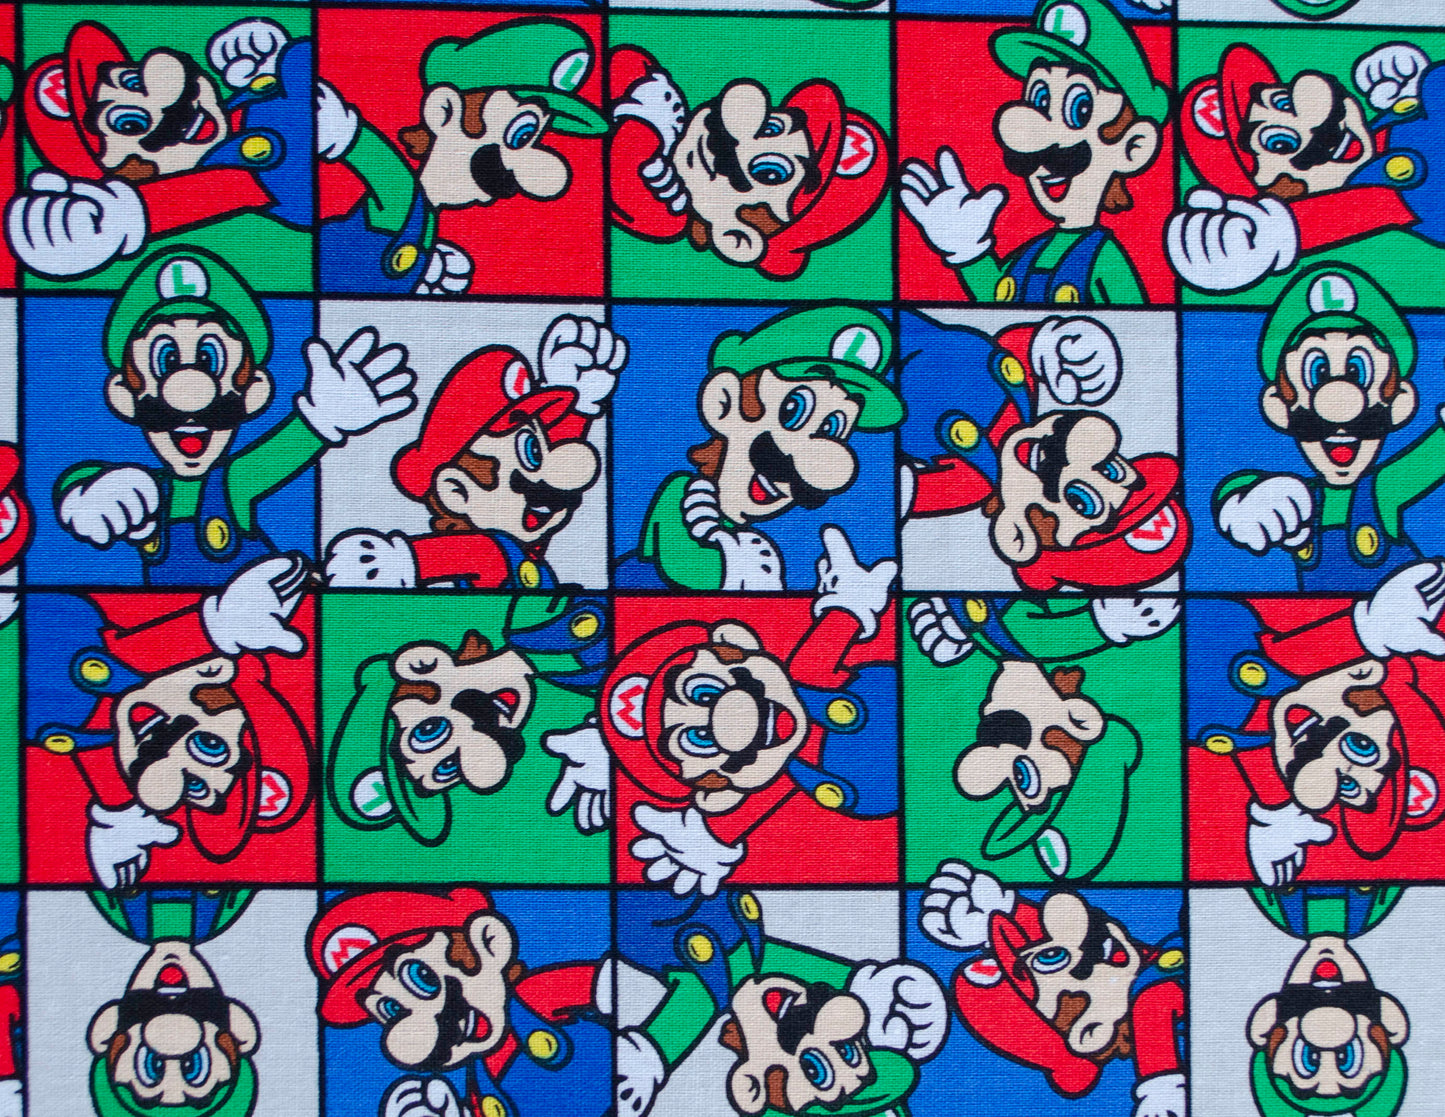 Mario and Luigi (010)